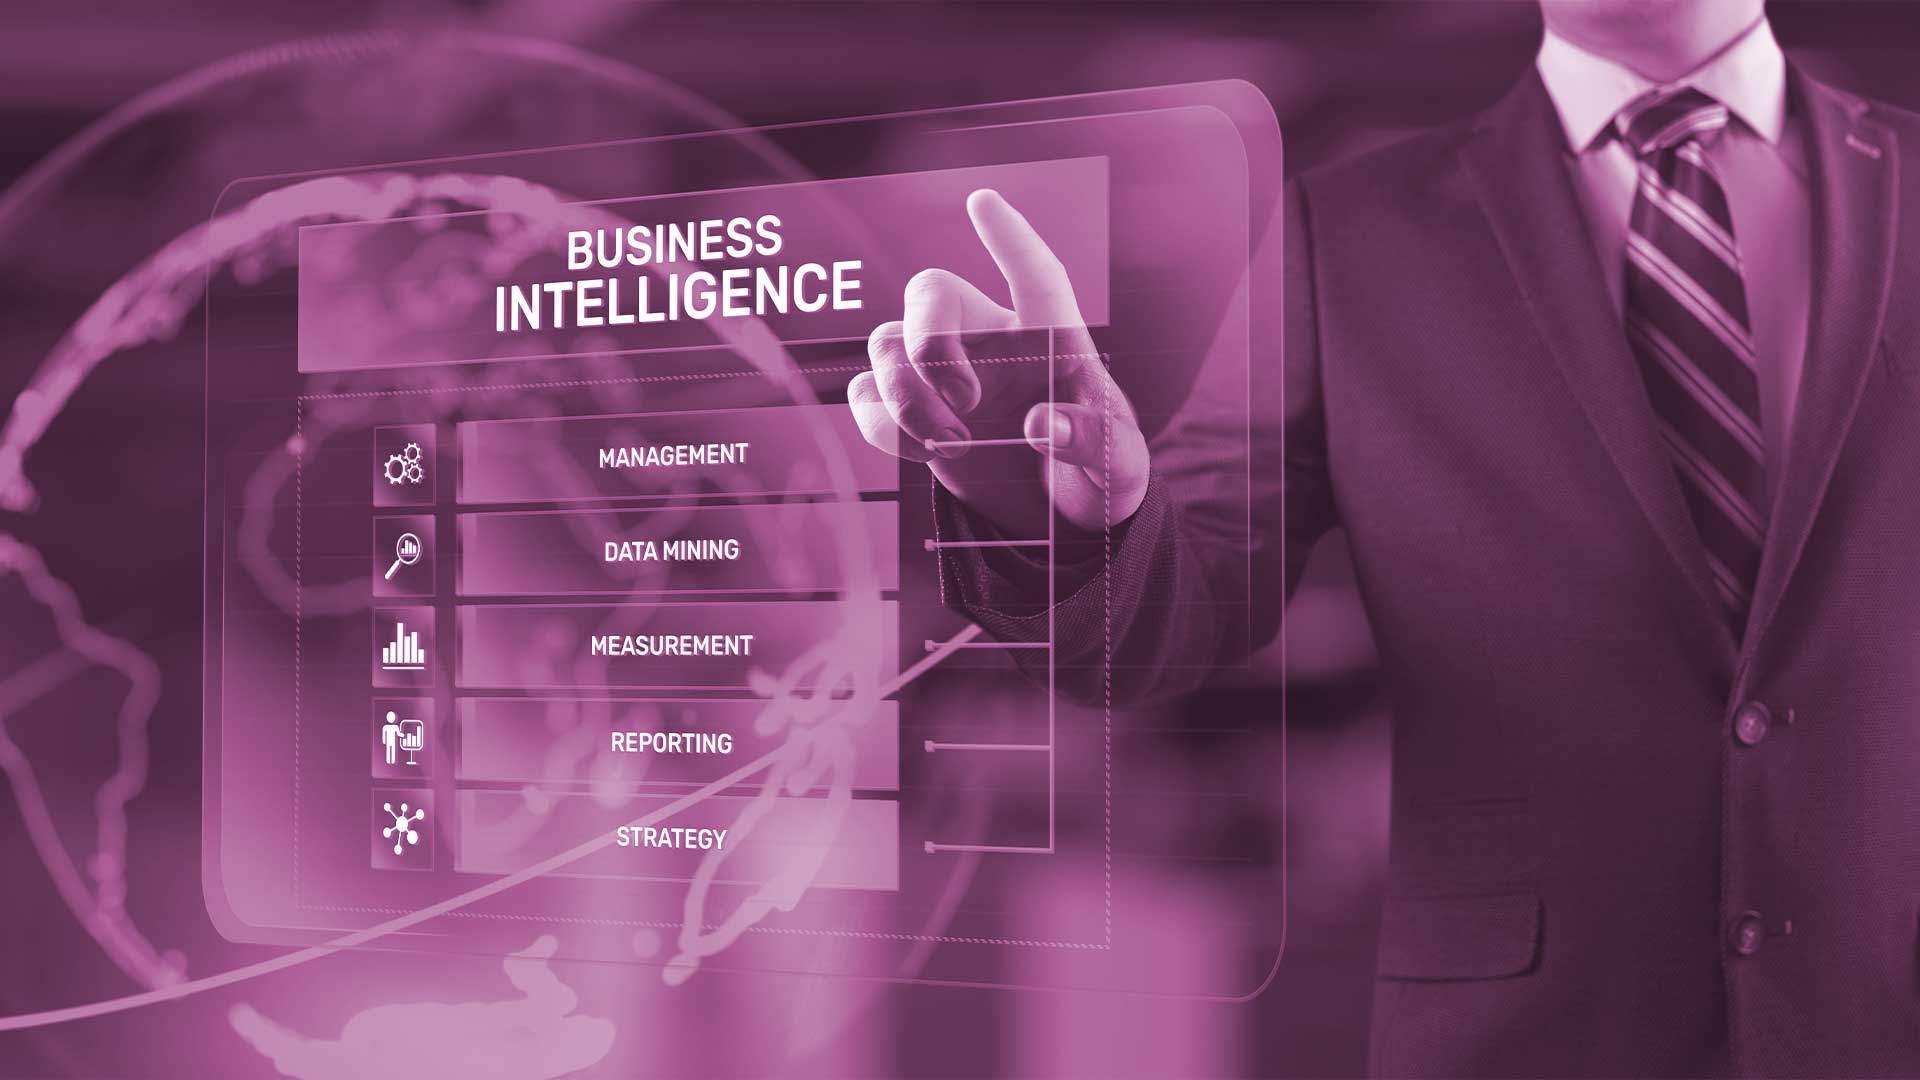 IT-Miarbeiter recherchiert, wie Business Intelligence das Unternehmen erfolgreicher macht.